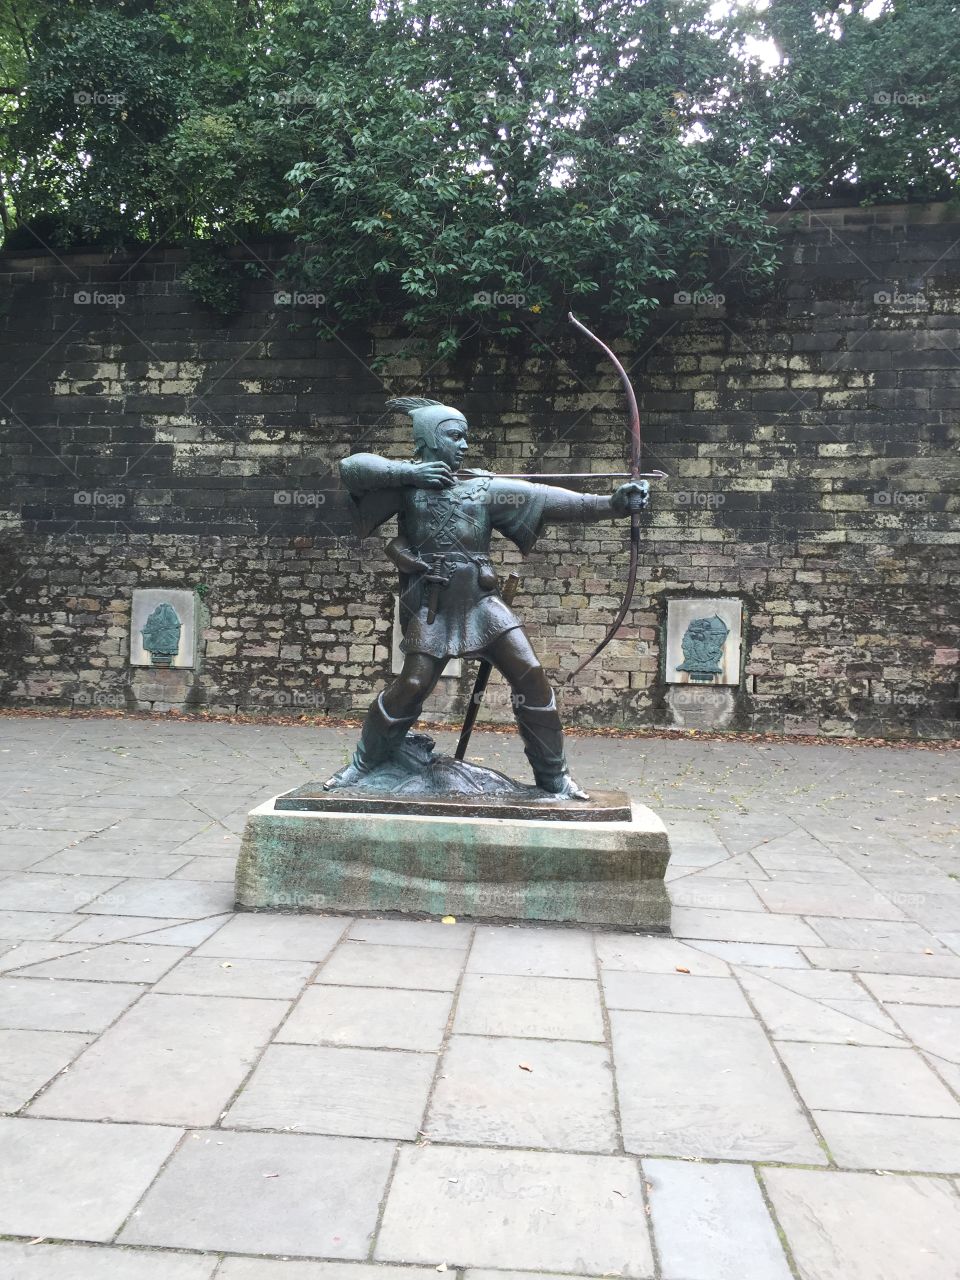 Robin Hood statue near lace market Nottingham 